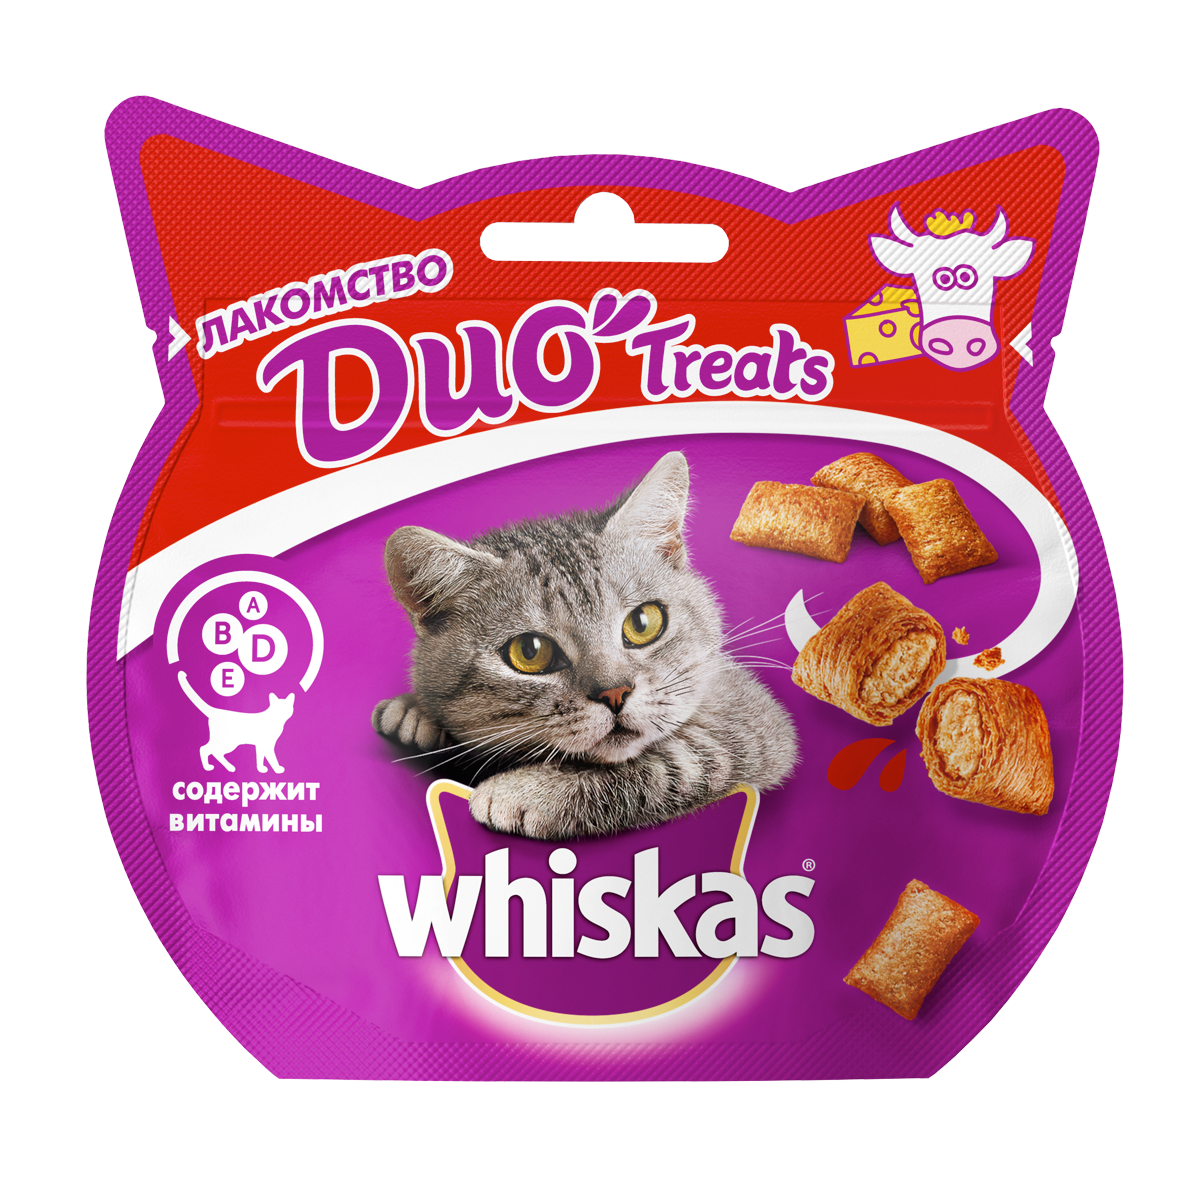 Лакомство для кошек Whiskas Duo Treats подушечки с говядиной и сыром, 40 г